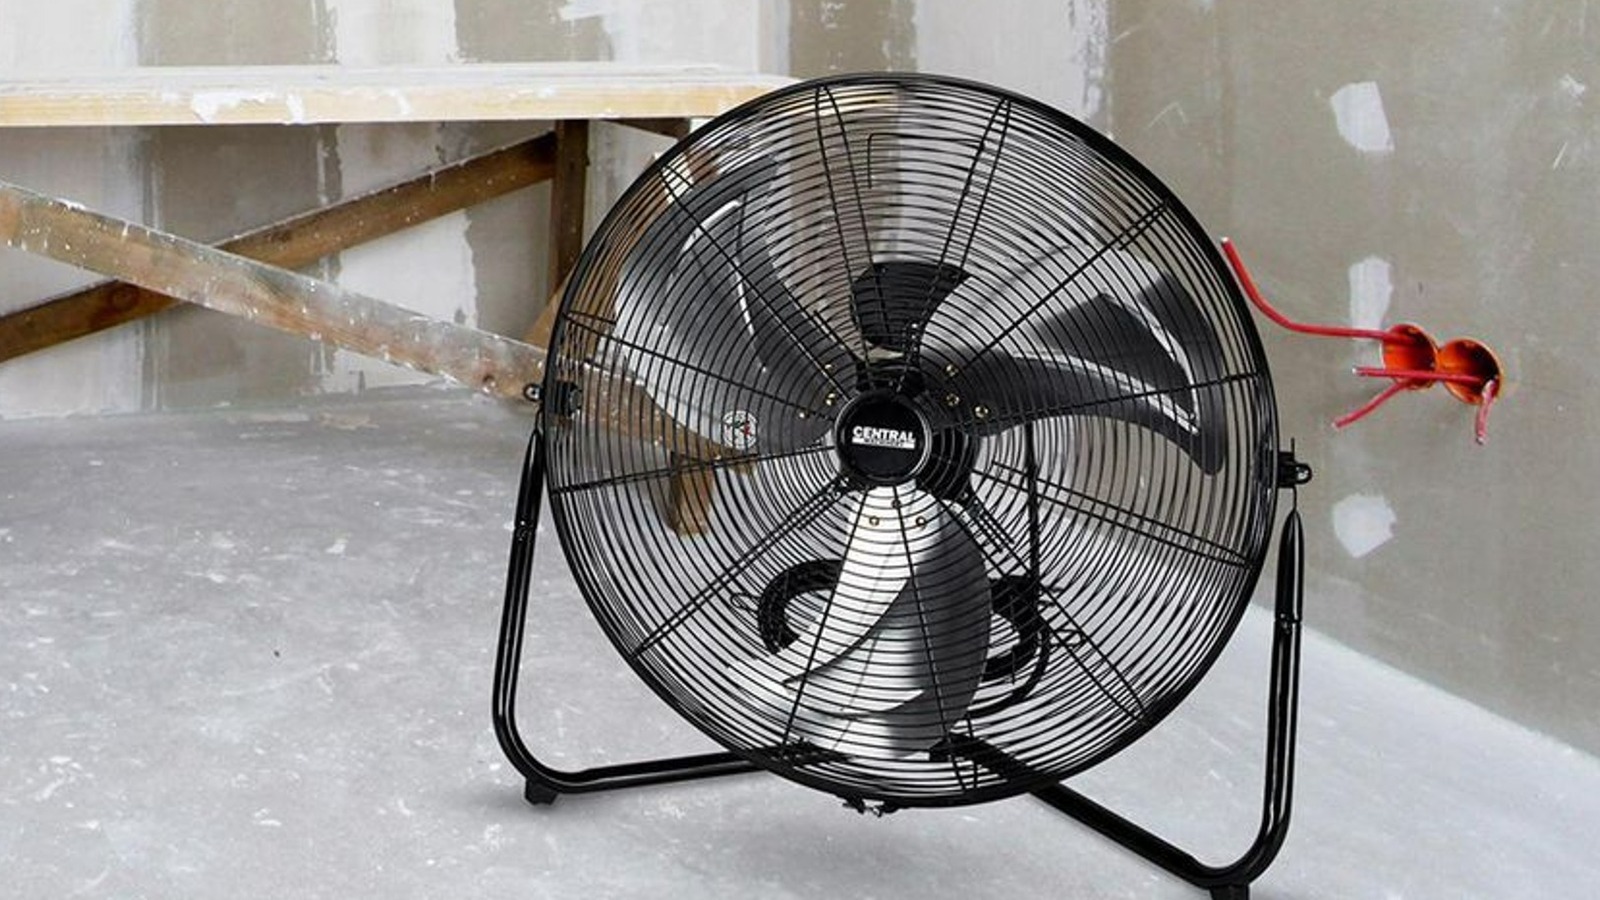 Estos ventiladores de carga portuaria pueden ayudar a mantener fresco su espacio de trabajo o garaje durante los días calurosos